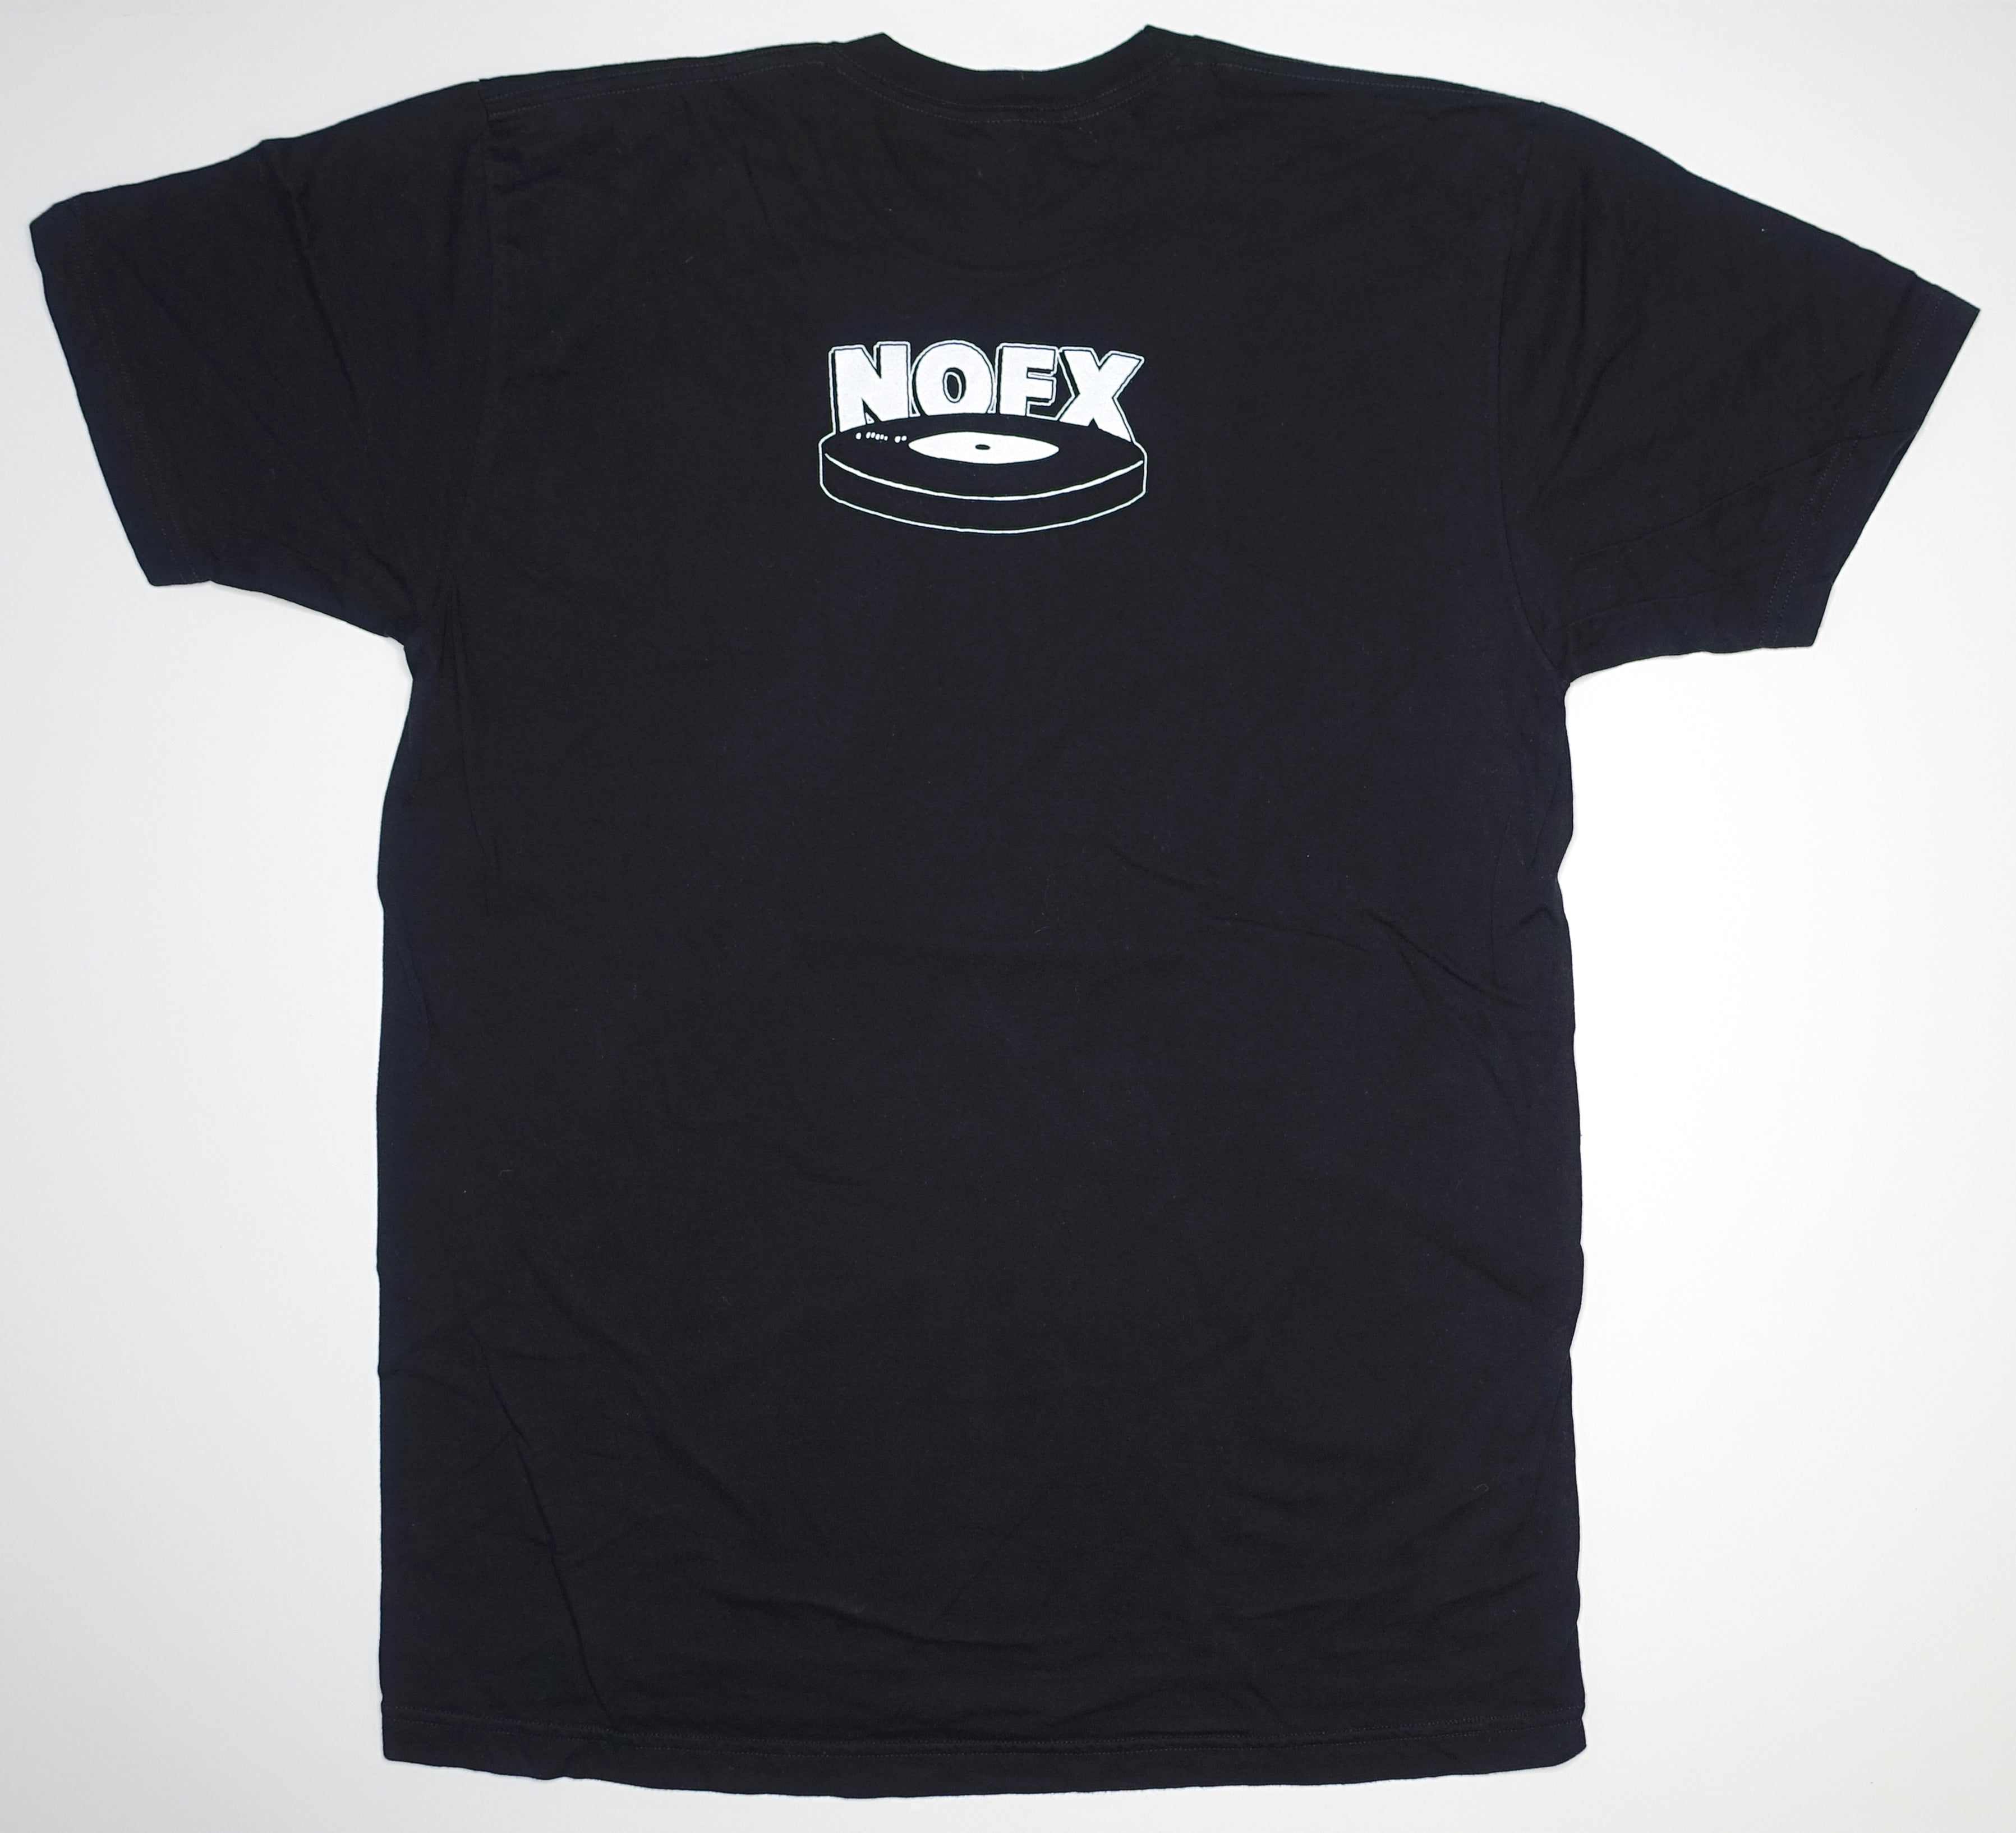 NOFX - Cokie The Clown 2009 Tour Shirt Size Large